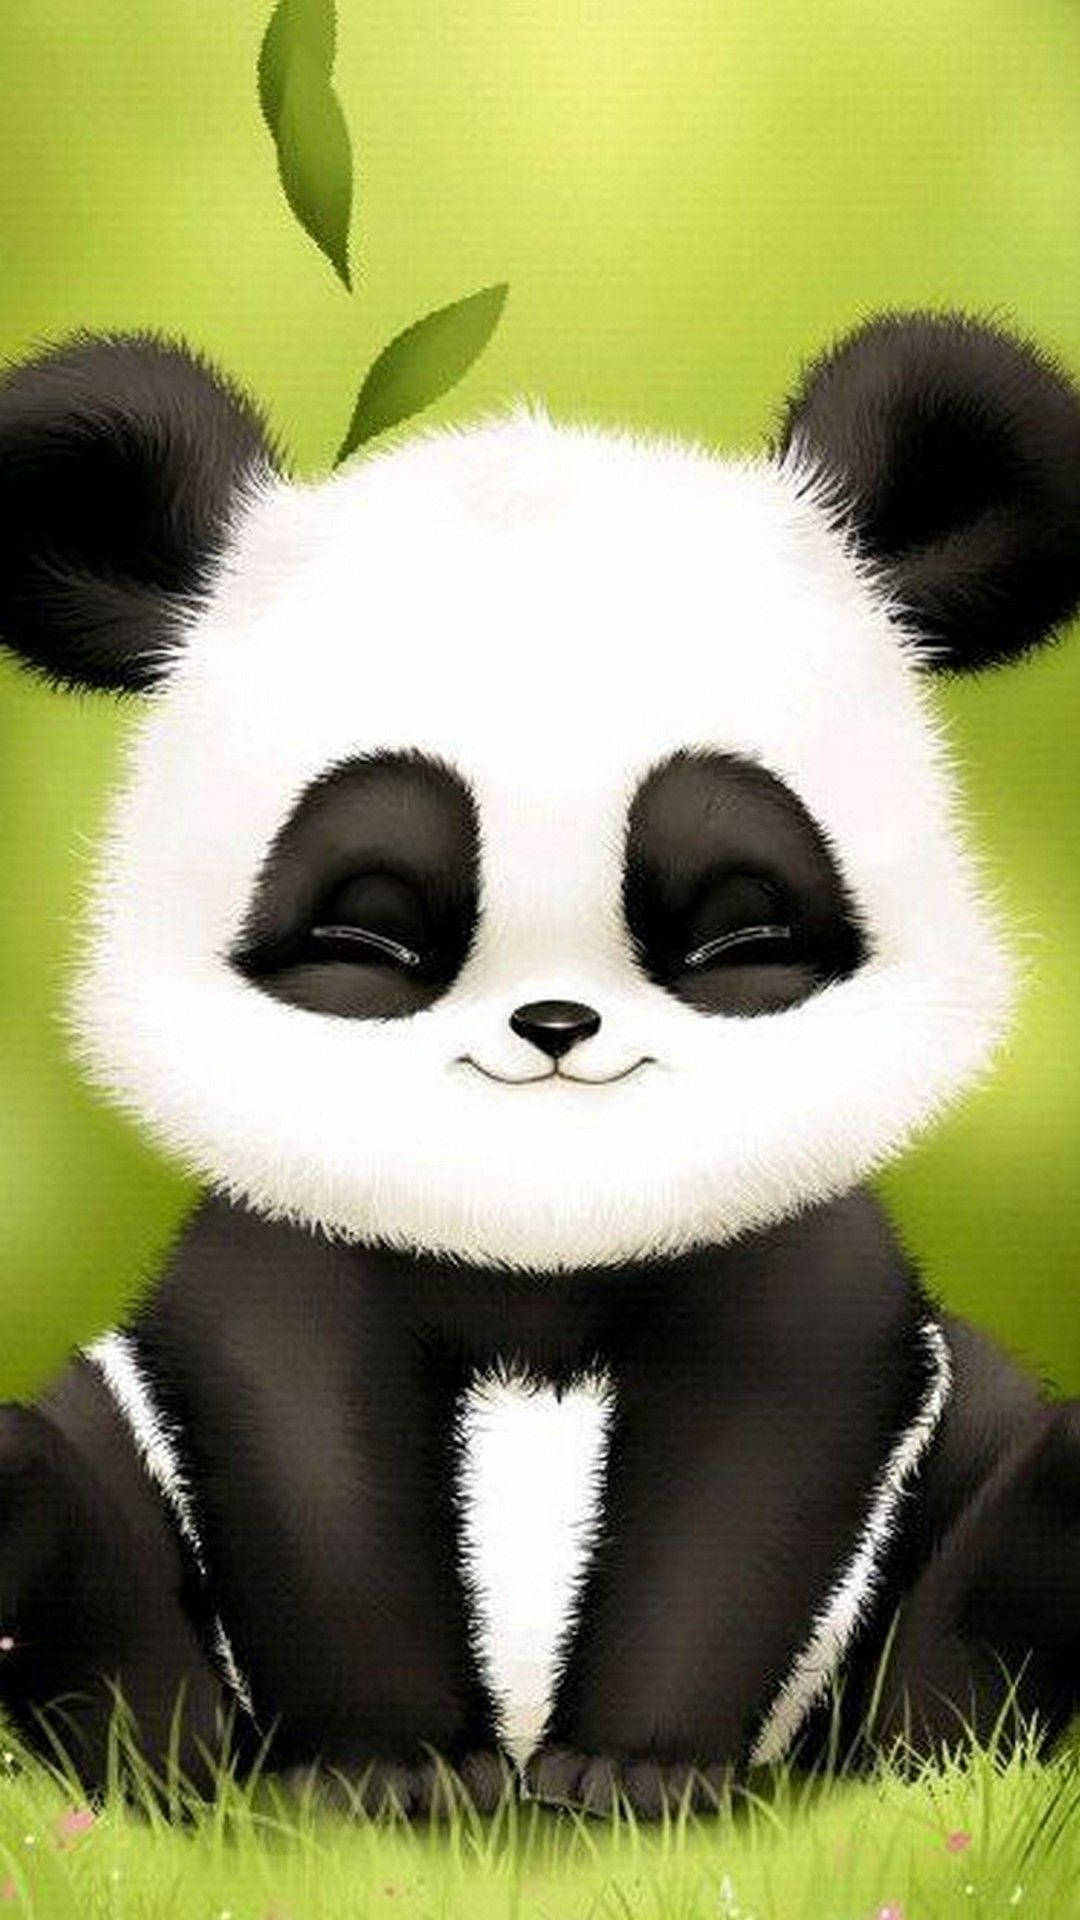 panda smiling